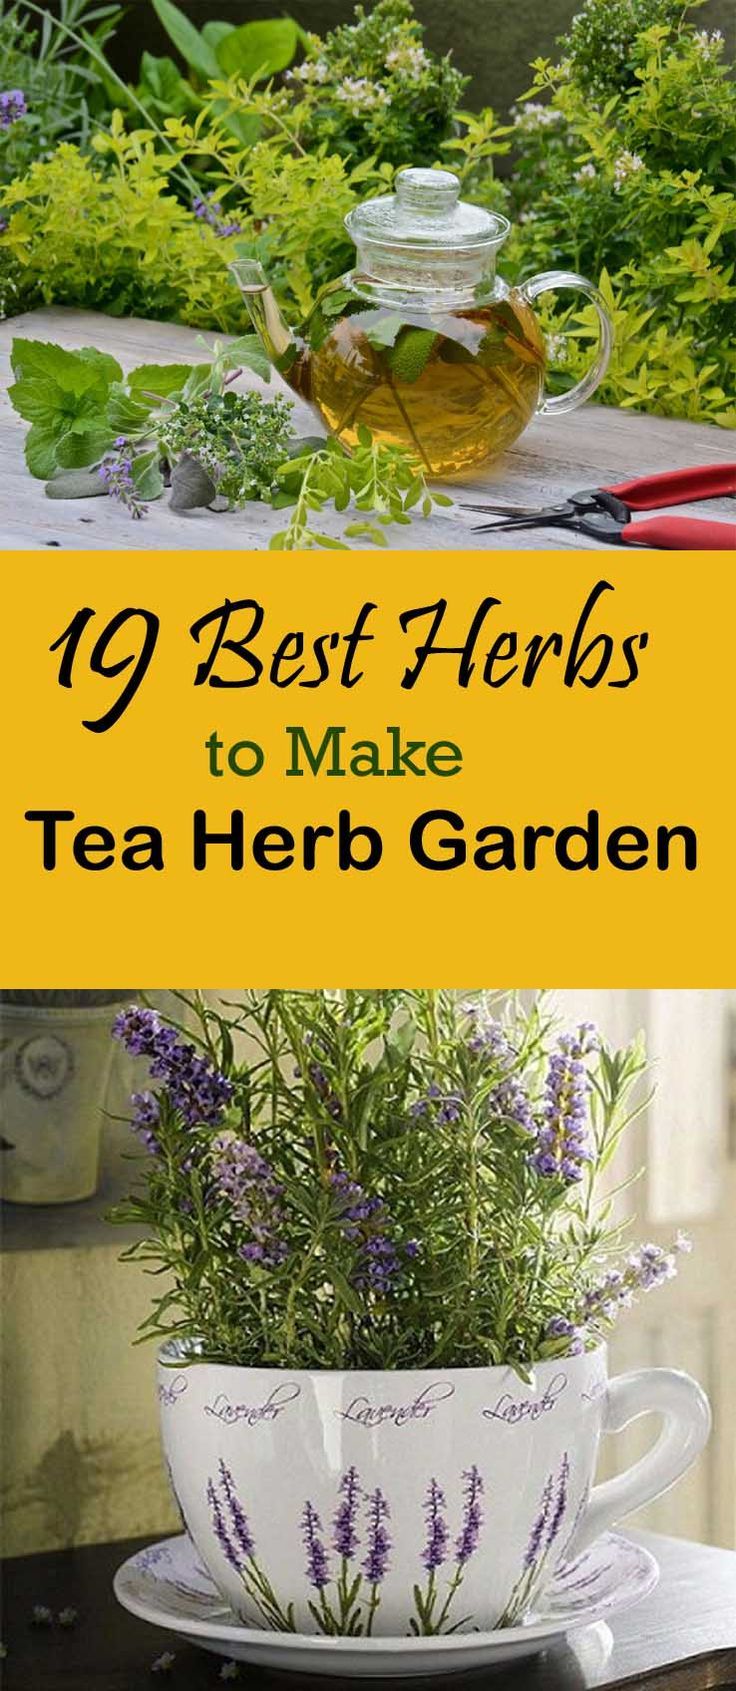 19 Best Tea Herbs to Make a Tea Herb Garden